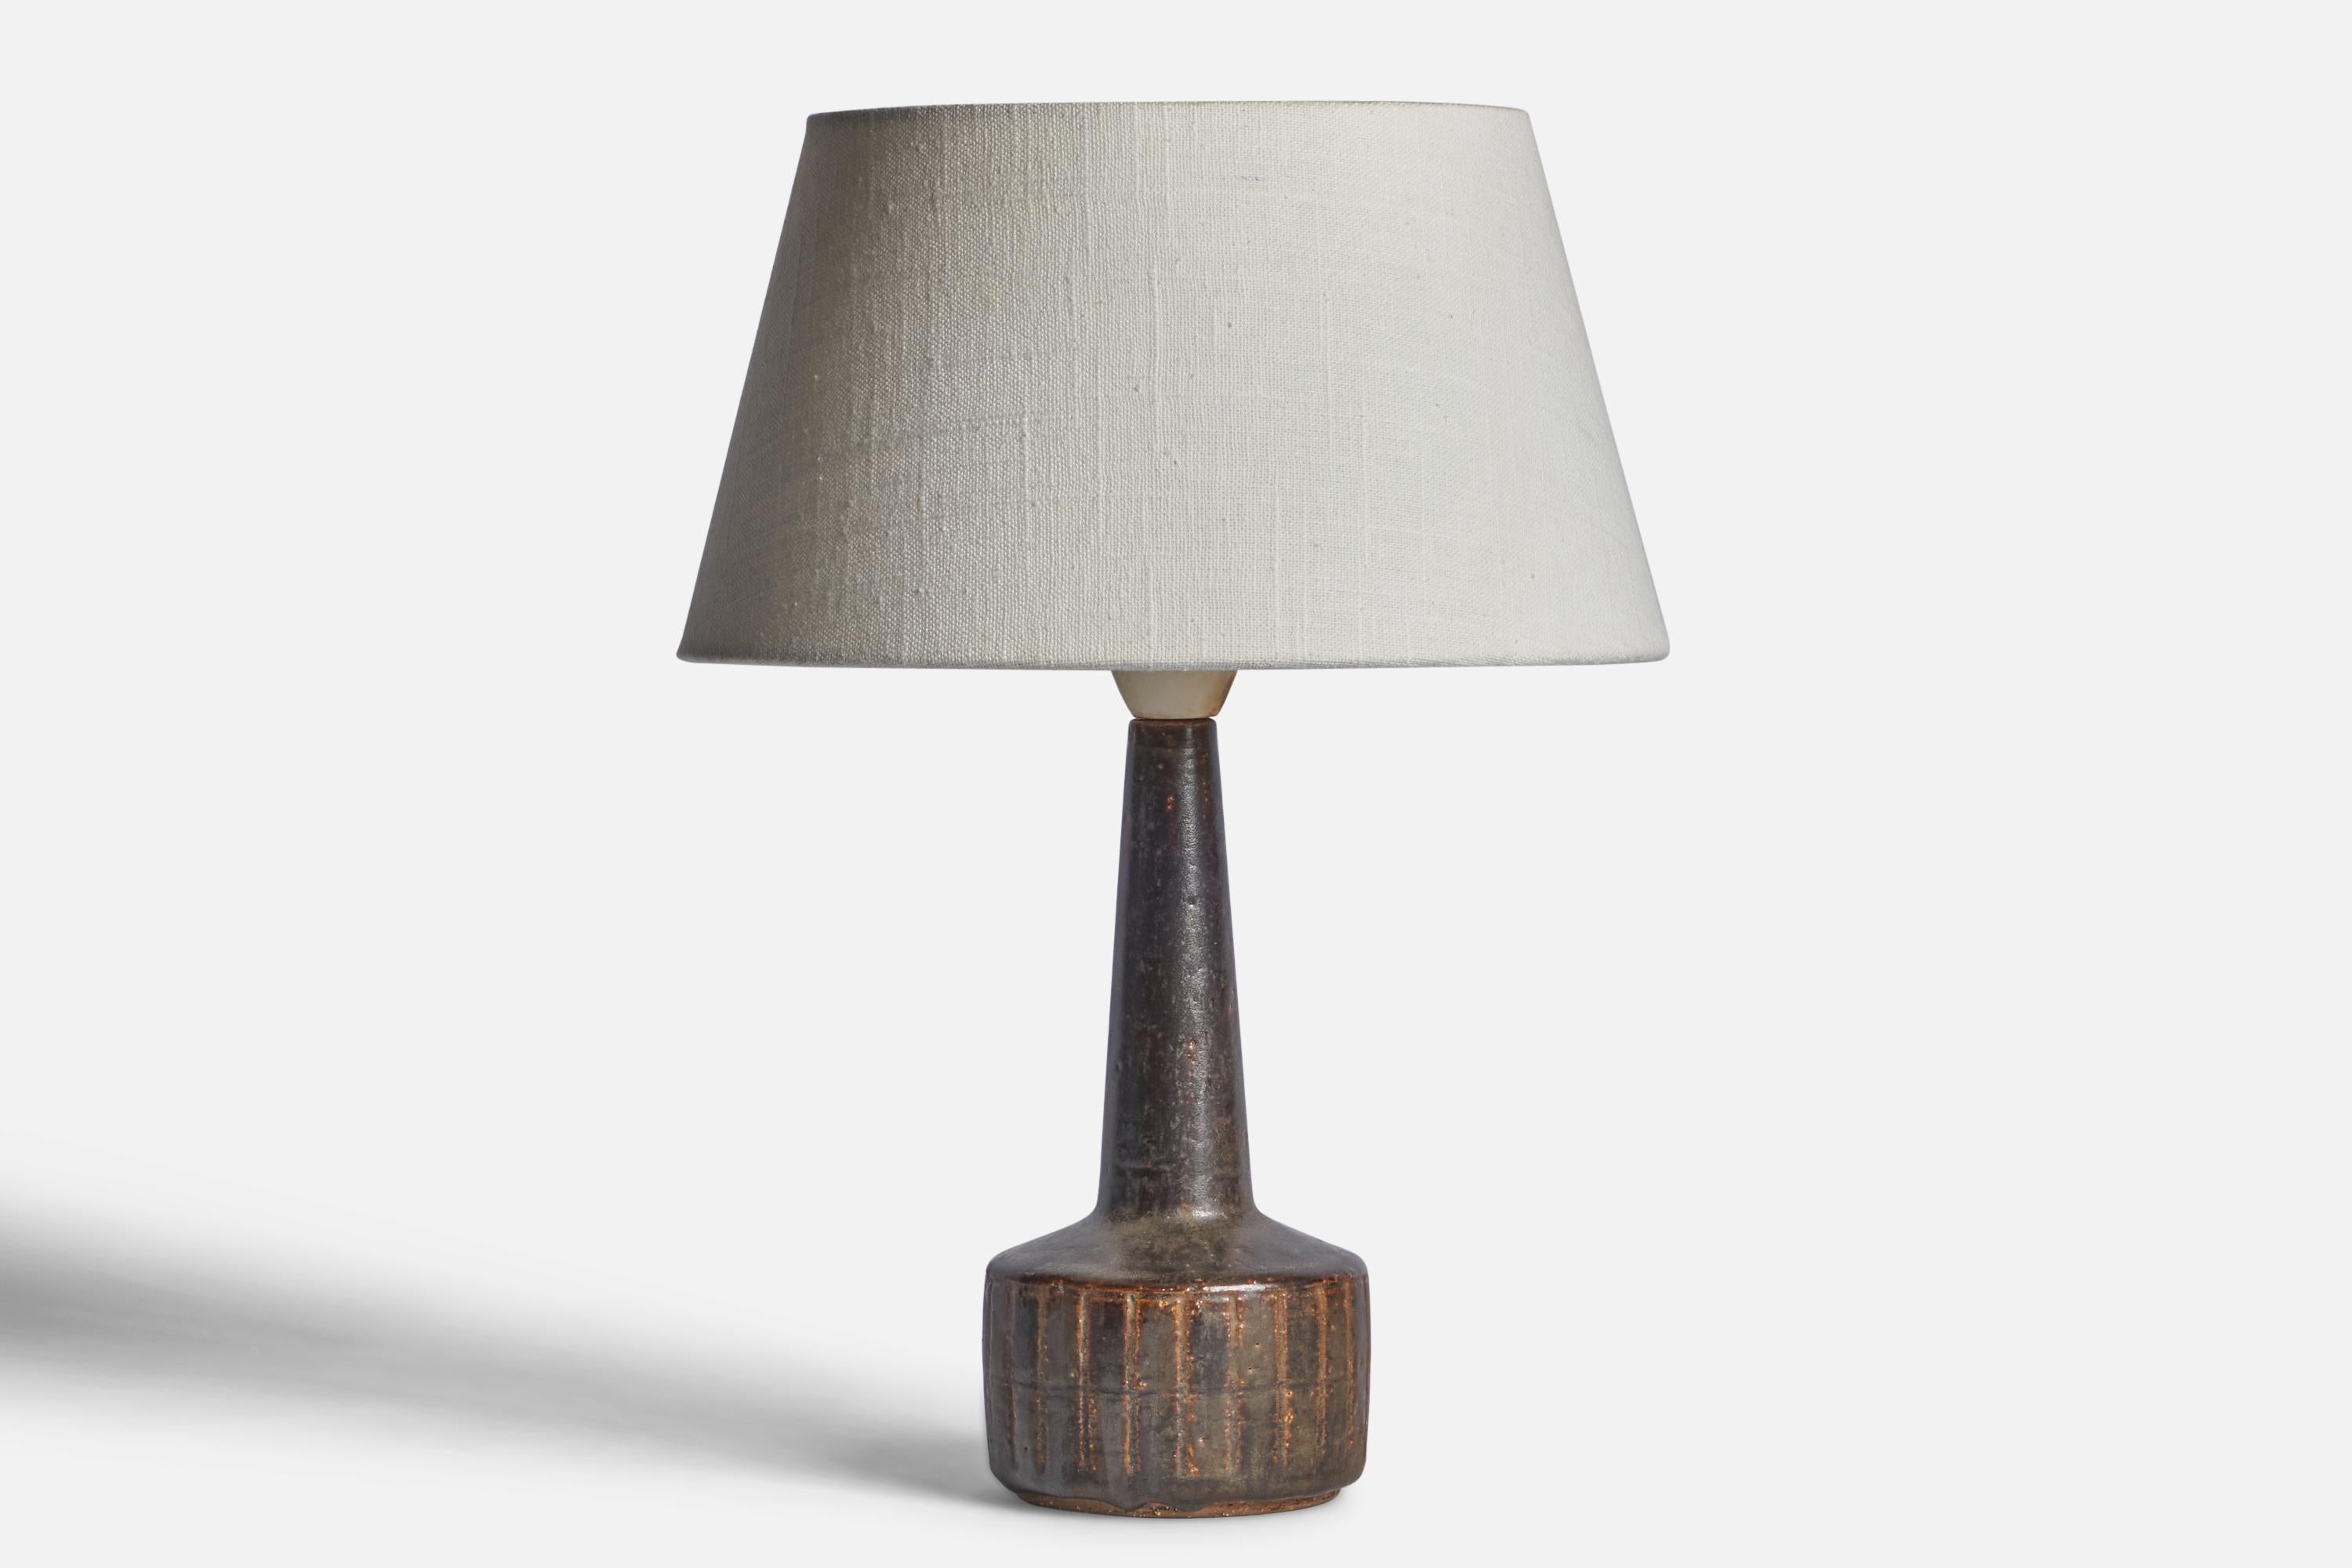 Tischlampe aus braun glasiertem Steingut, entworfen von Per & Annelise Linneman-Schmidt, hergestellt von Palshus, Dänemark, 1960er Jahre.

Abmessungen der Lampe (Zoll): 10,85